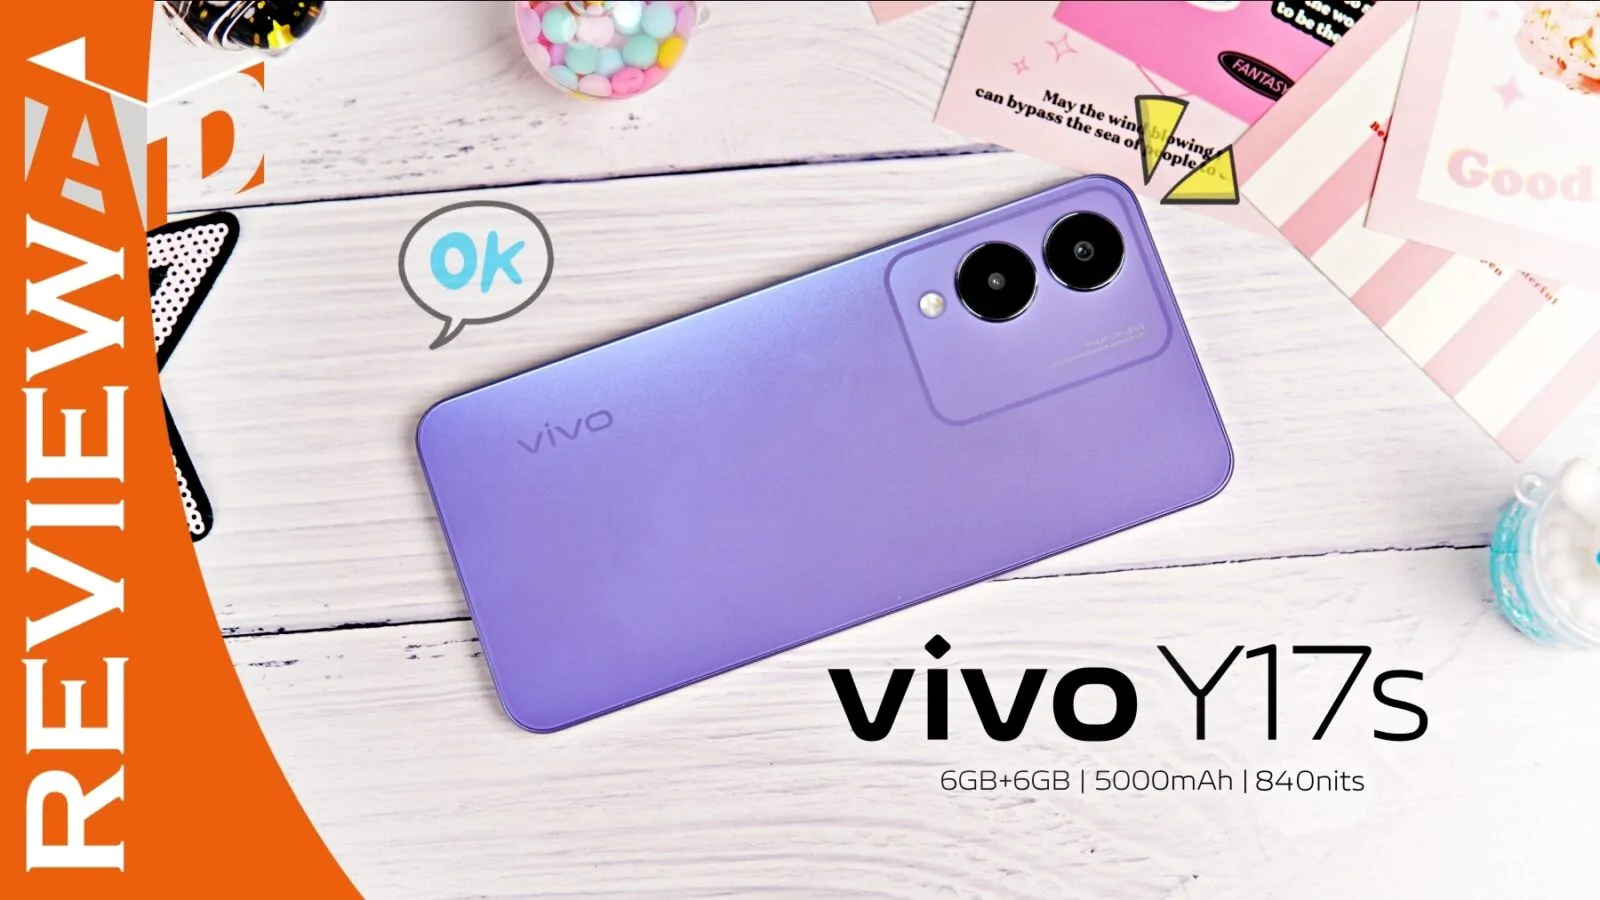 vivo Y17s Review | Review | รีวิว vivo Y17s เครื่องสวย สีใหม่ Glitter Purple จอสว่างชัดเกินราคา